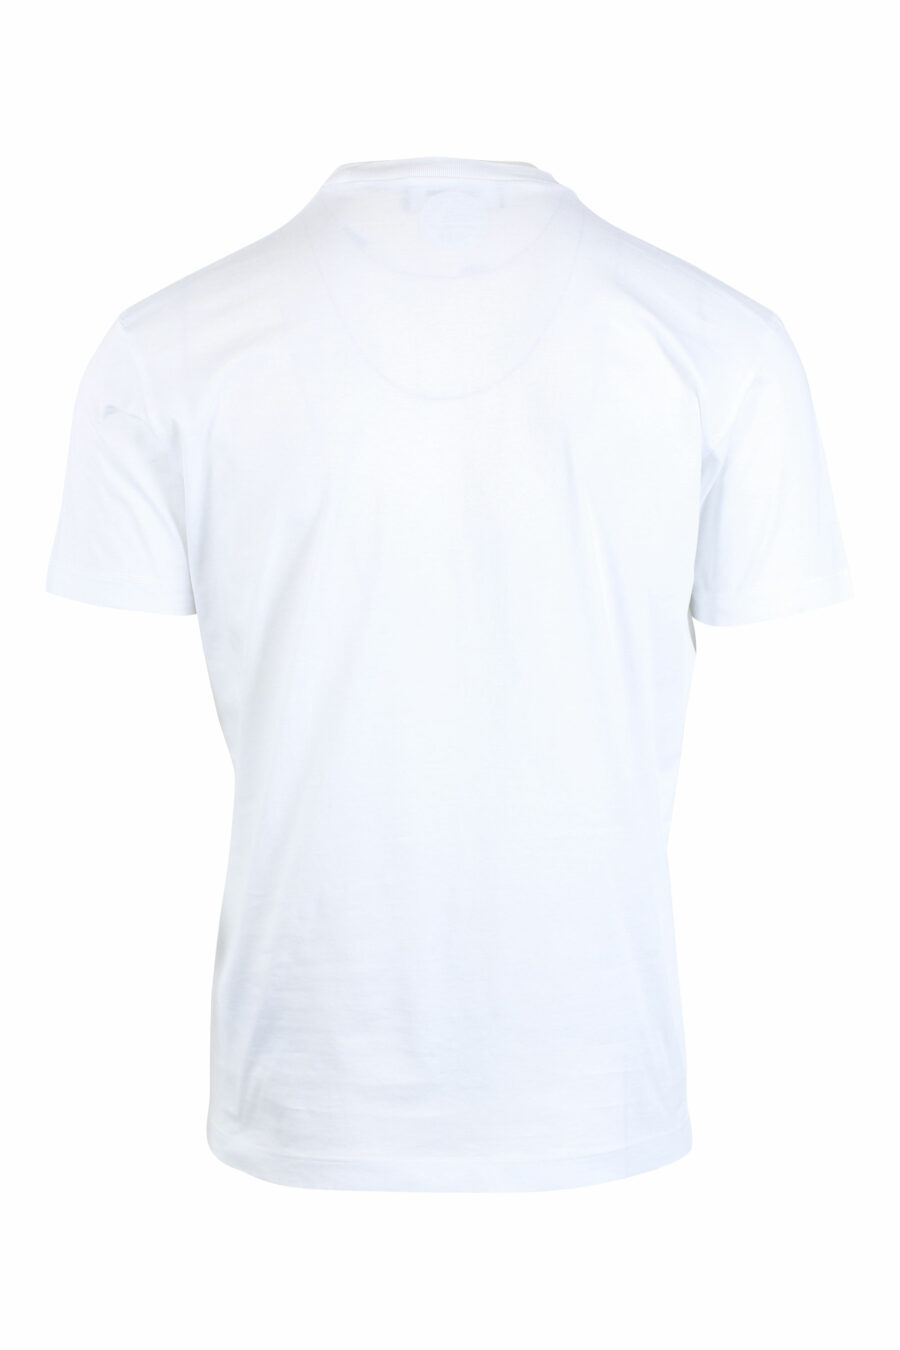 Weißes T-Shirt mit Maxilogo und Blatt - IMG 2629